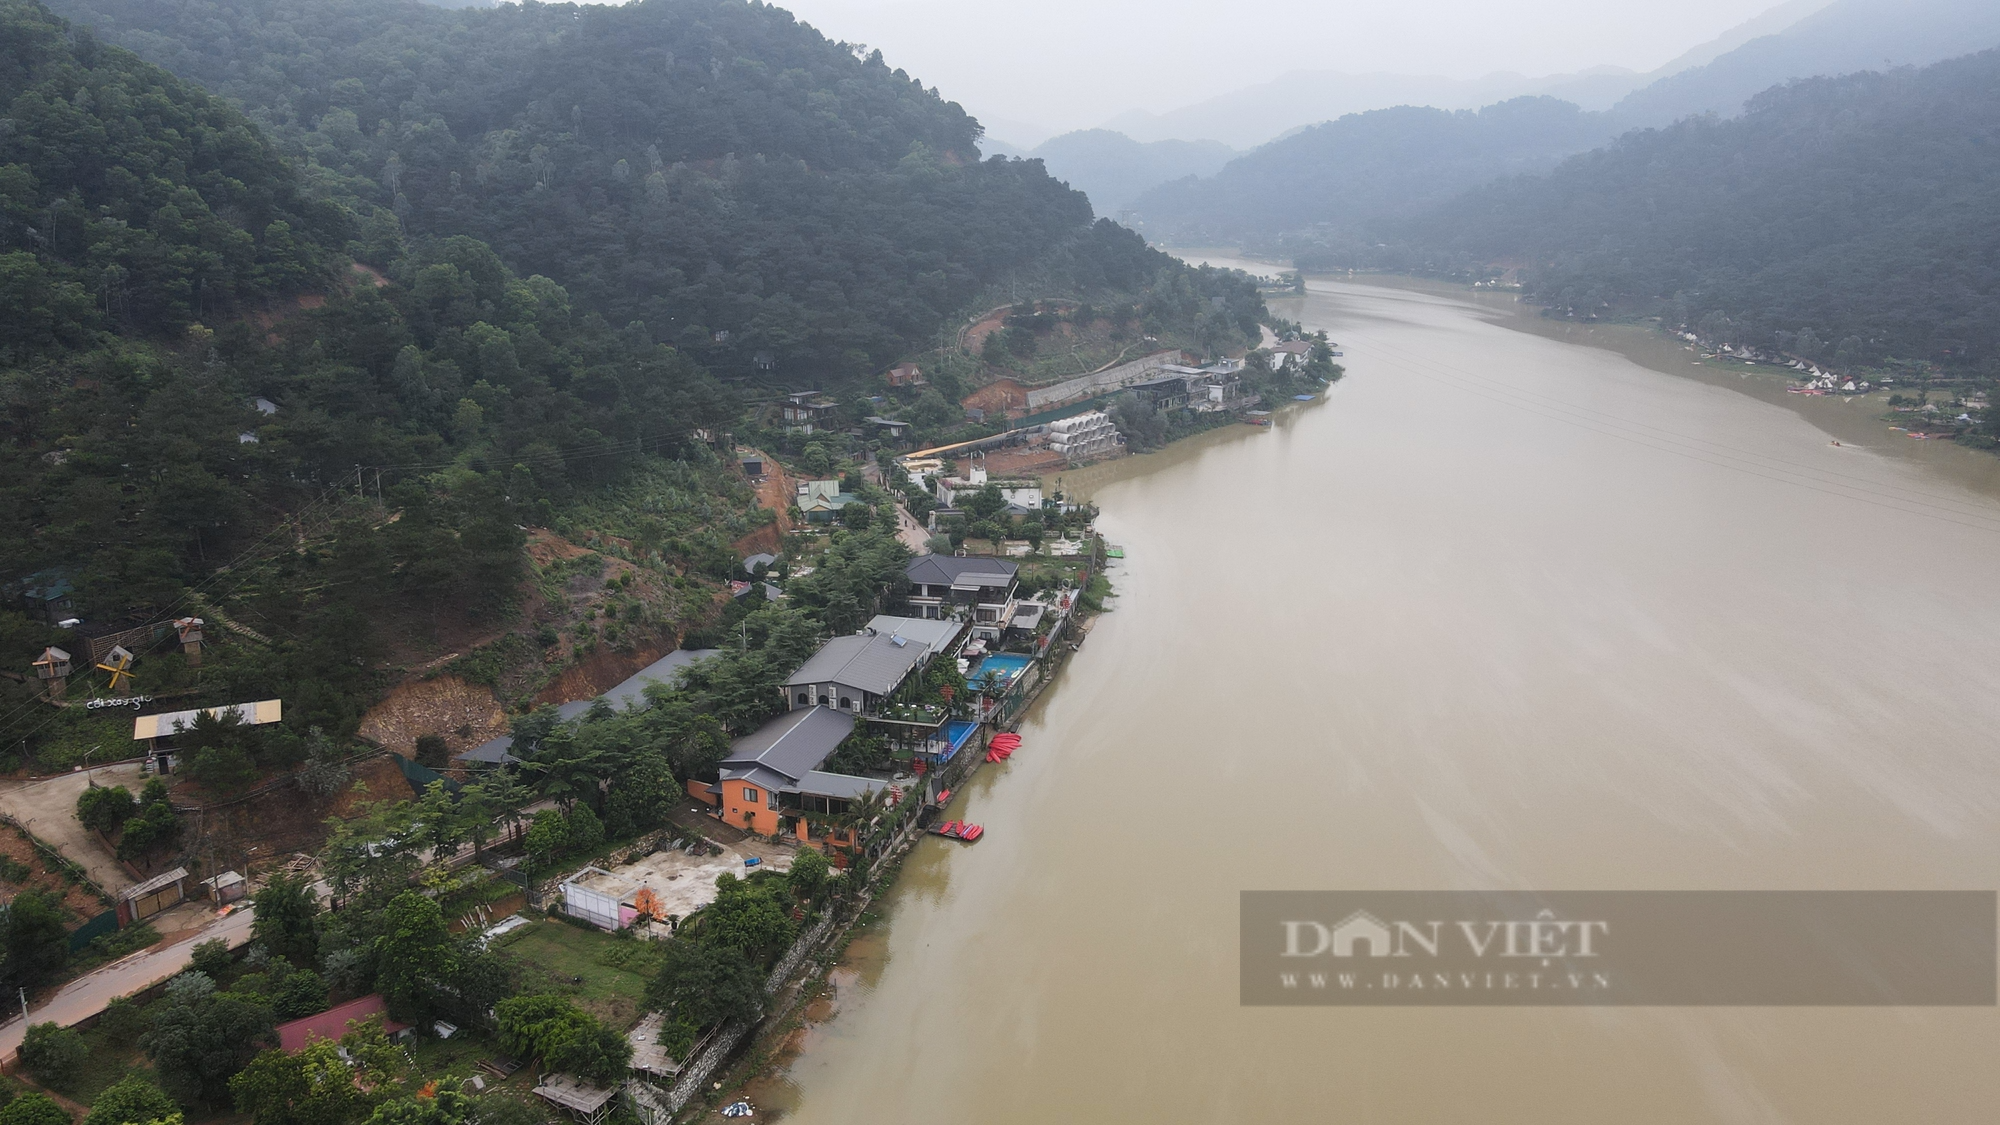 Hồ Đồng Đò huyện Sóc Sơn bị vay kín bởi homestay, khu nghỉ dưỡng - Ảnh 1.